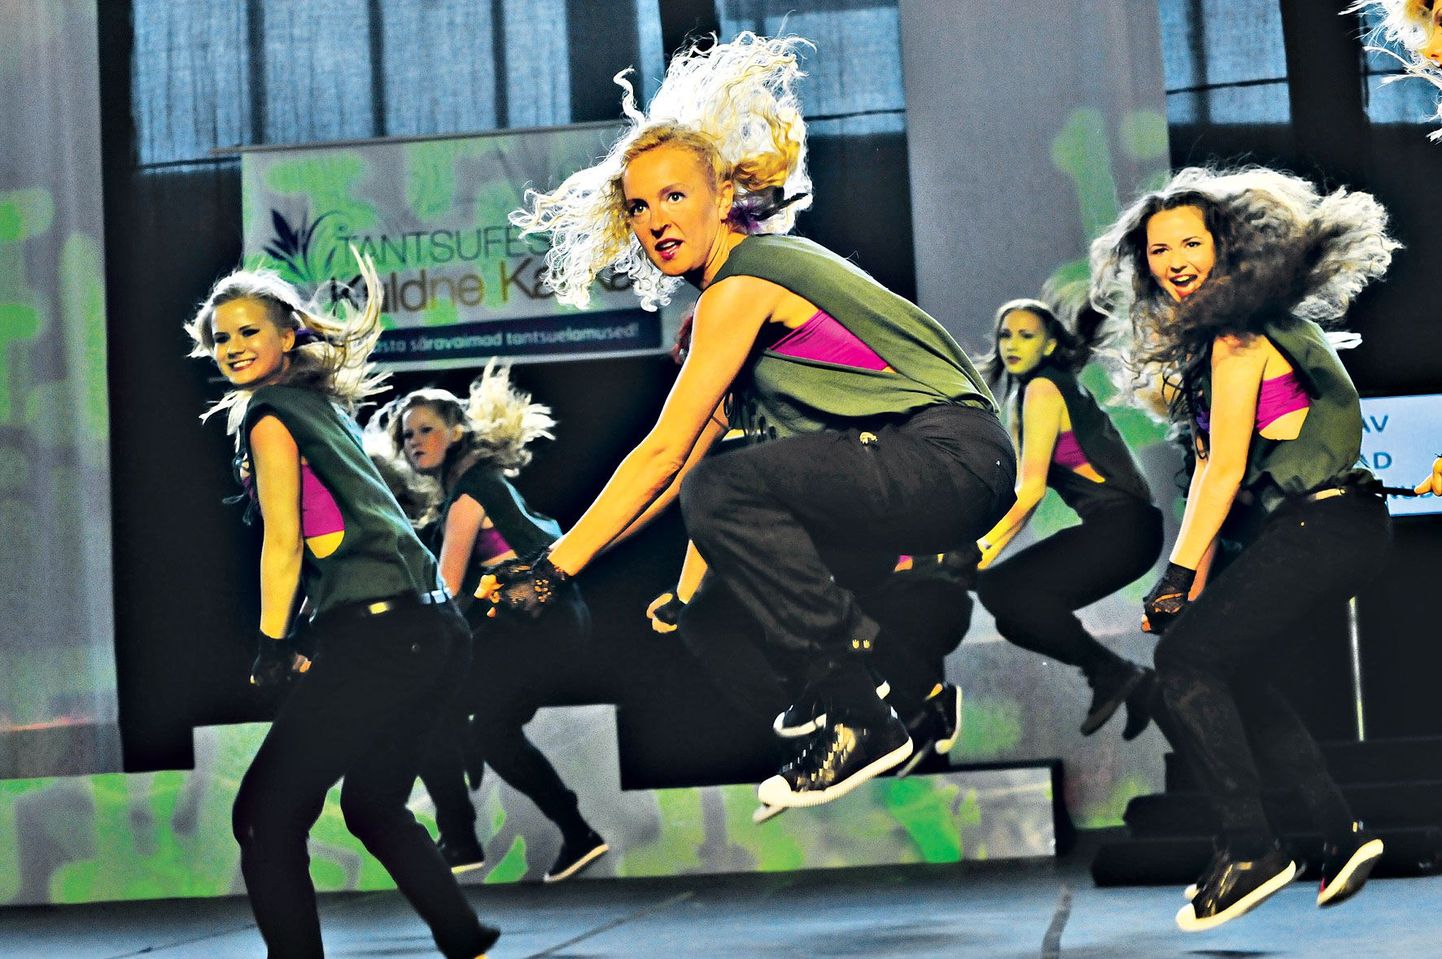 Tänavatants ja showtants on noorte seas tänu popmuusikale püsivalt kõige tantsitumad stiilid. Pildil Tähtvere tantsukooli neiud.